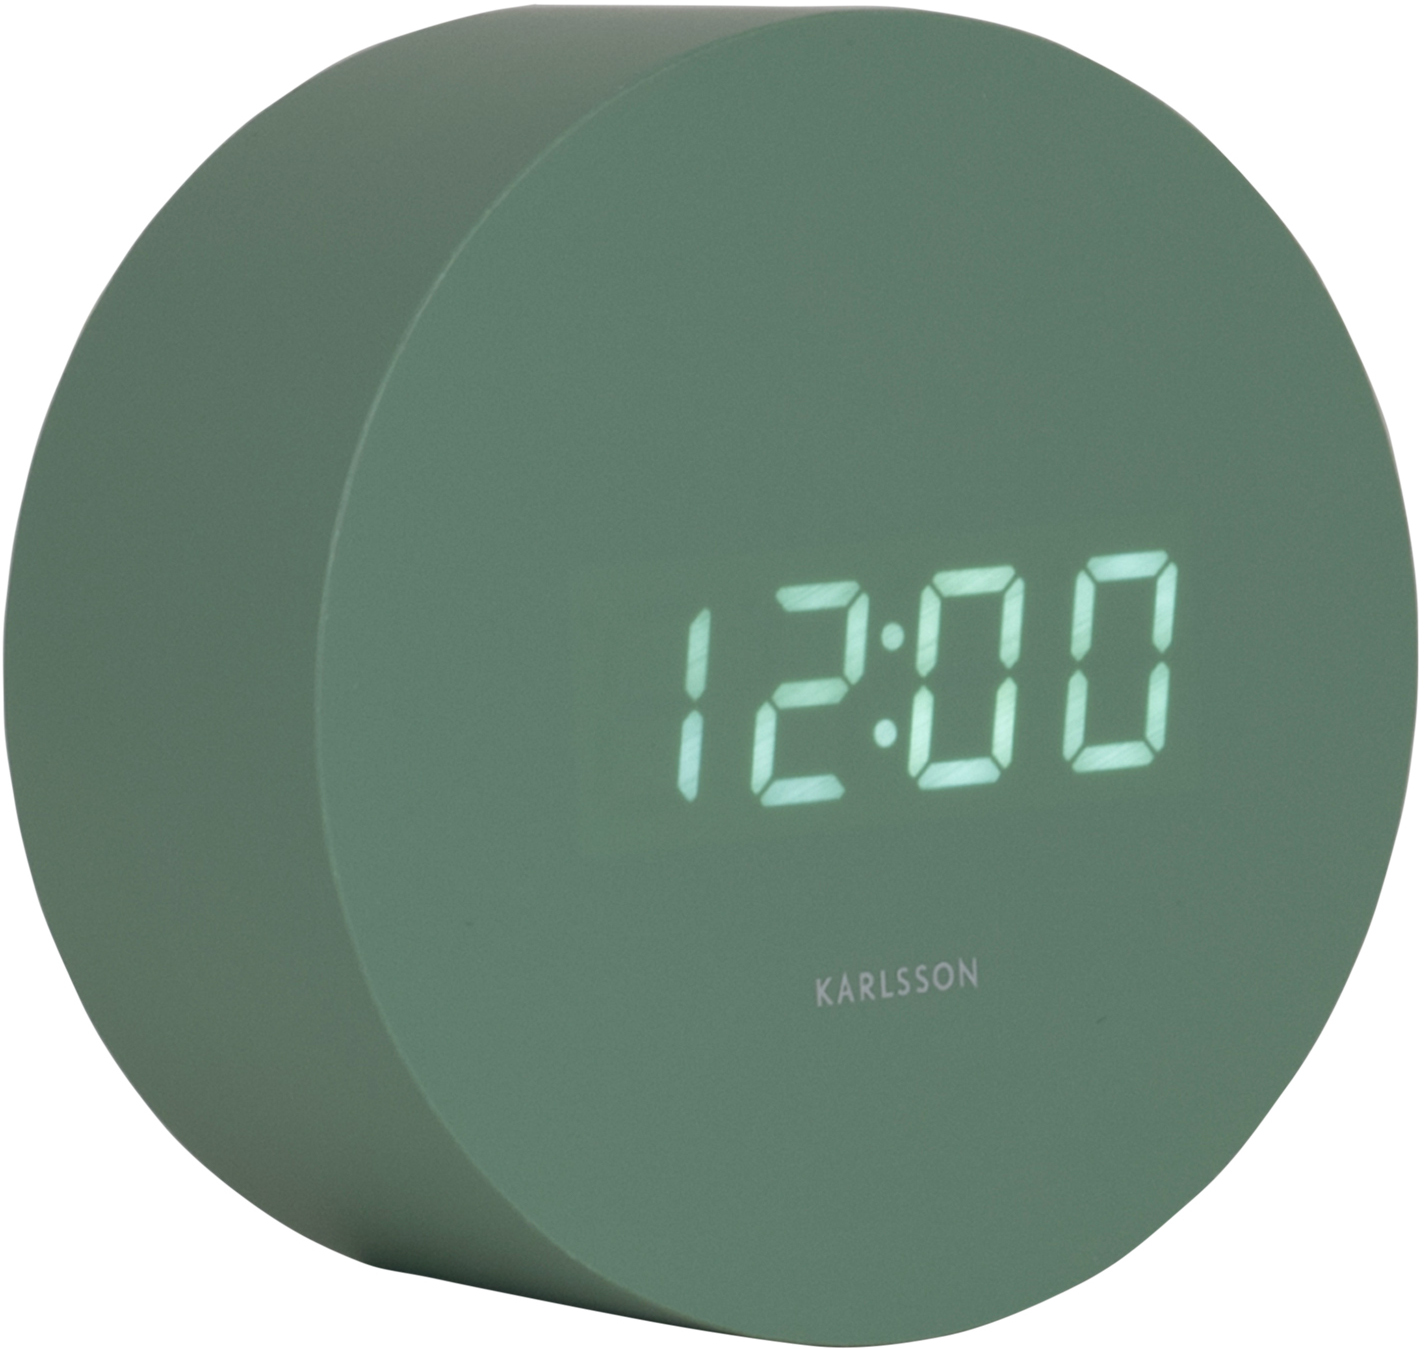 Karlsson Designové LED hodiny s budíkem KA5981GR